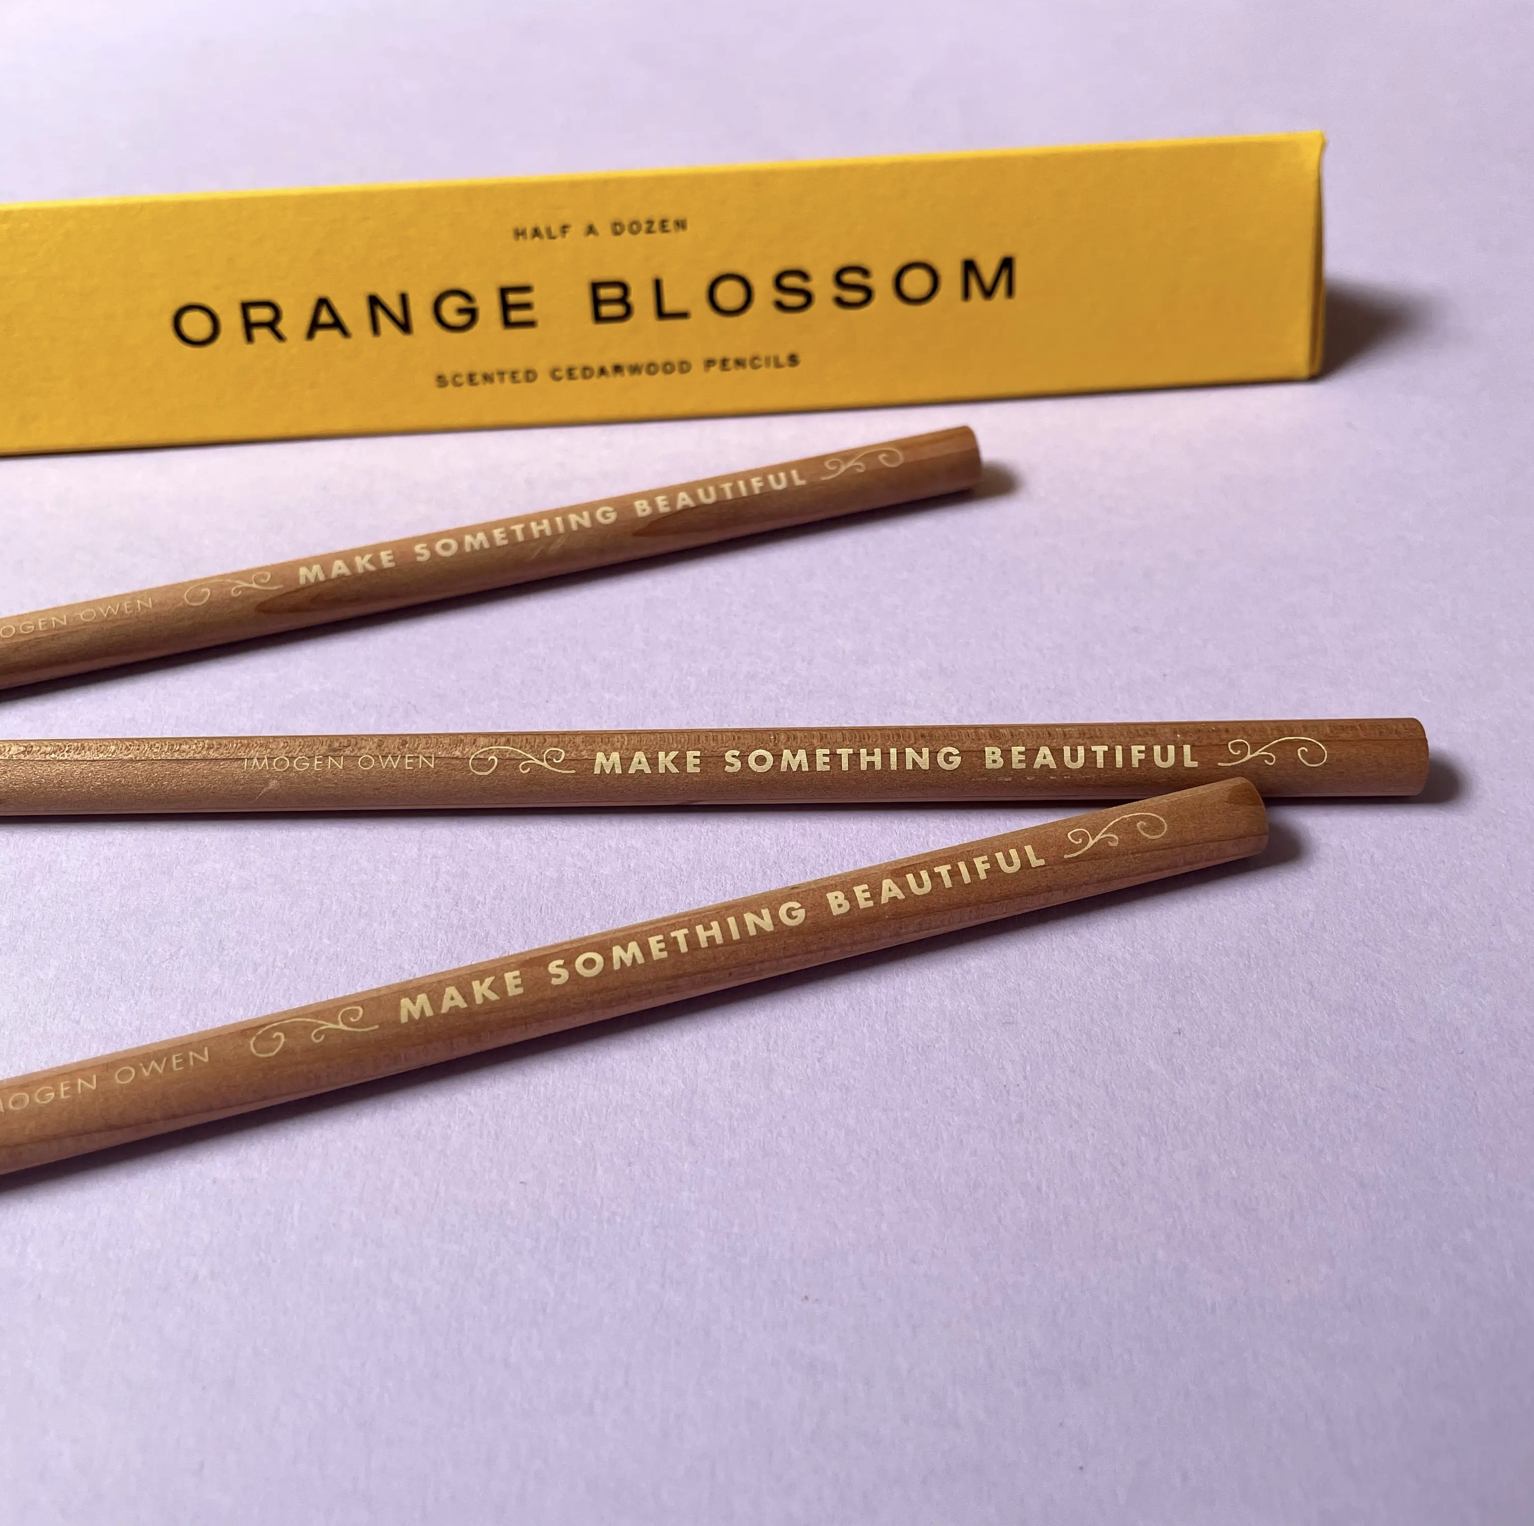 Zedernholz-Bleistift mit Duft - 6 Stk.